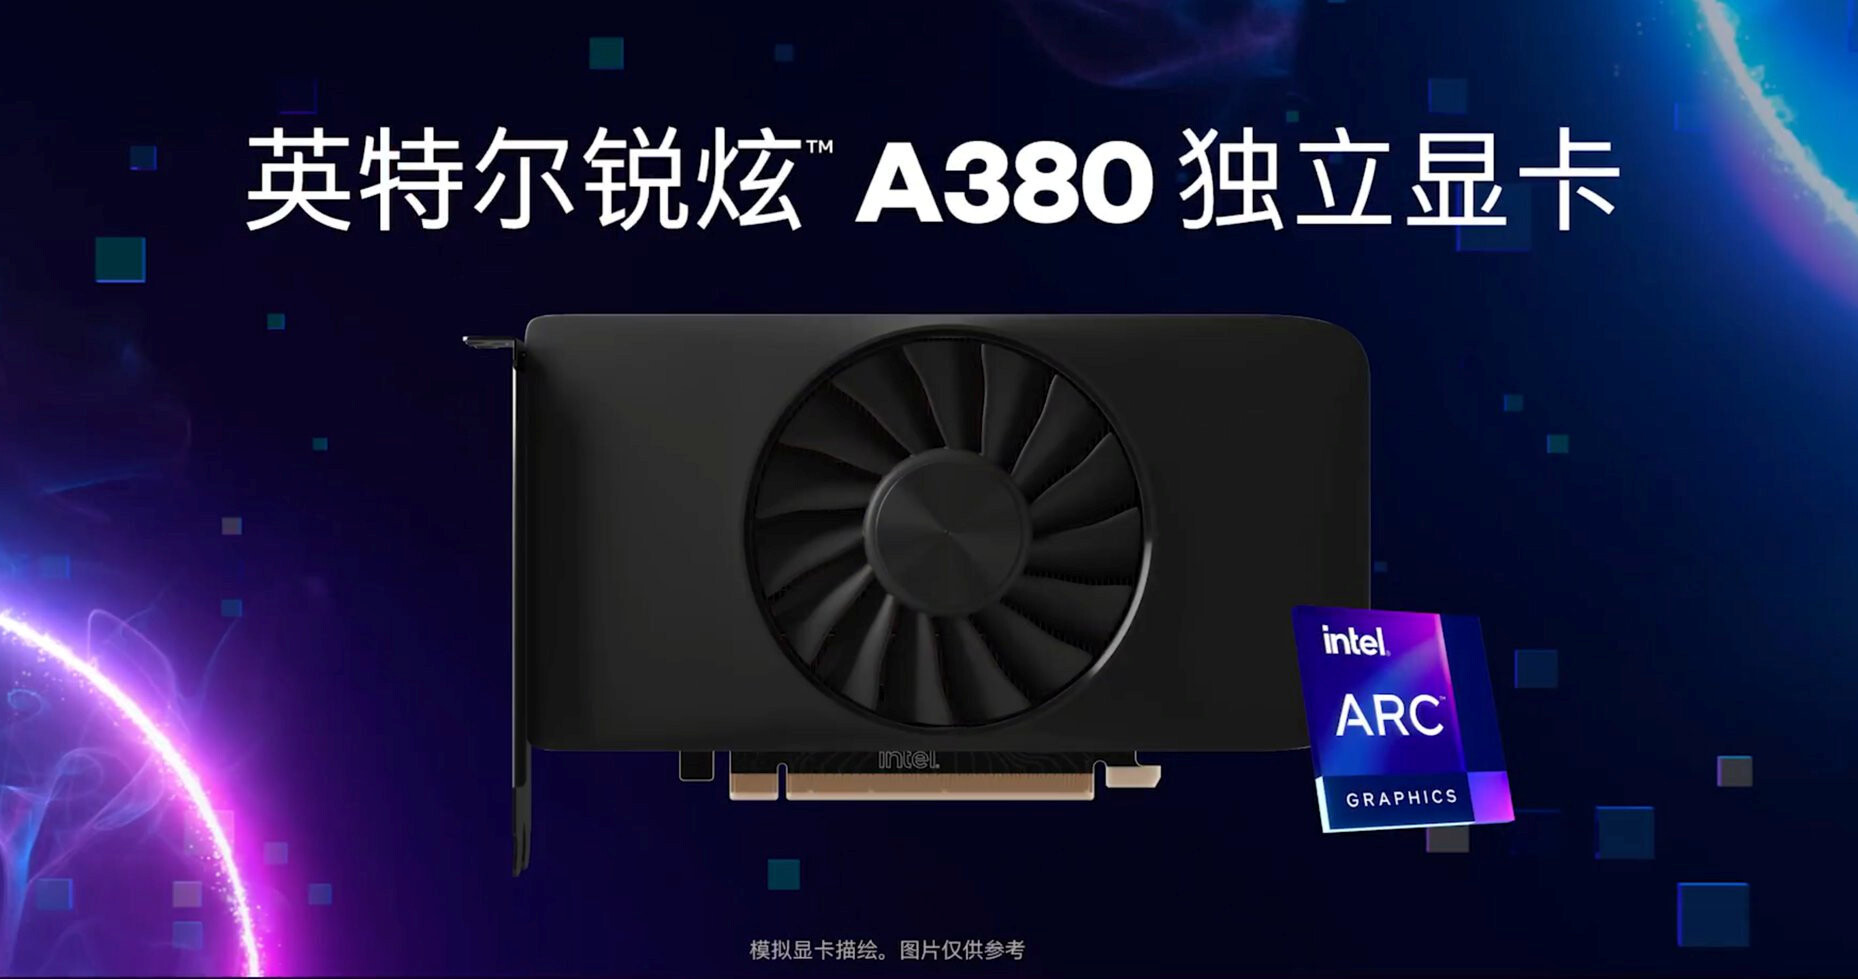 Immagine pubblicata in relazione al seguente contenuto: Intel lancia la video card per desktop Arc A380 per gaming a 1080p con 60fps | Nome immagine: news33381_Intel-Arc-A380_1.jpg